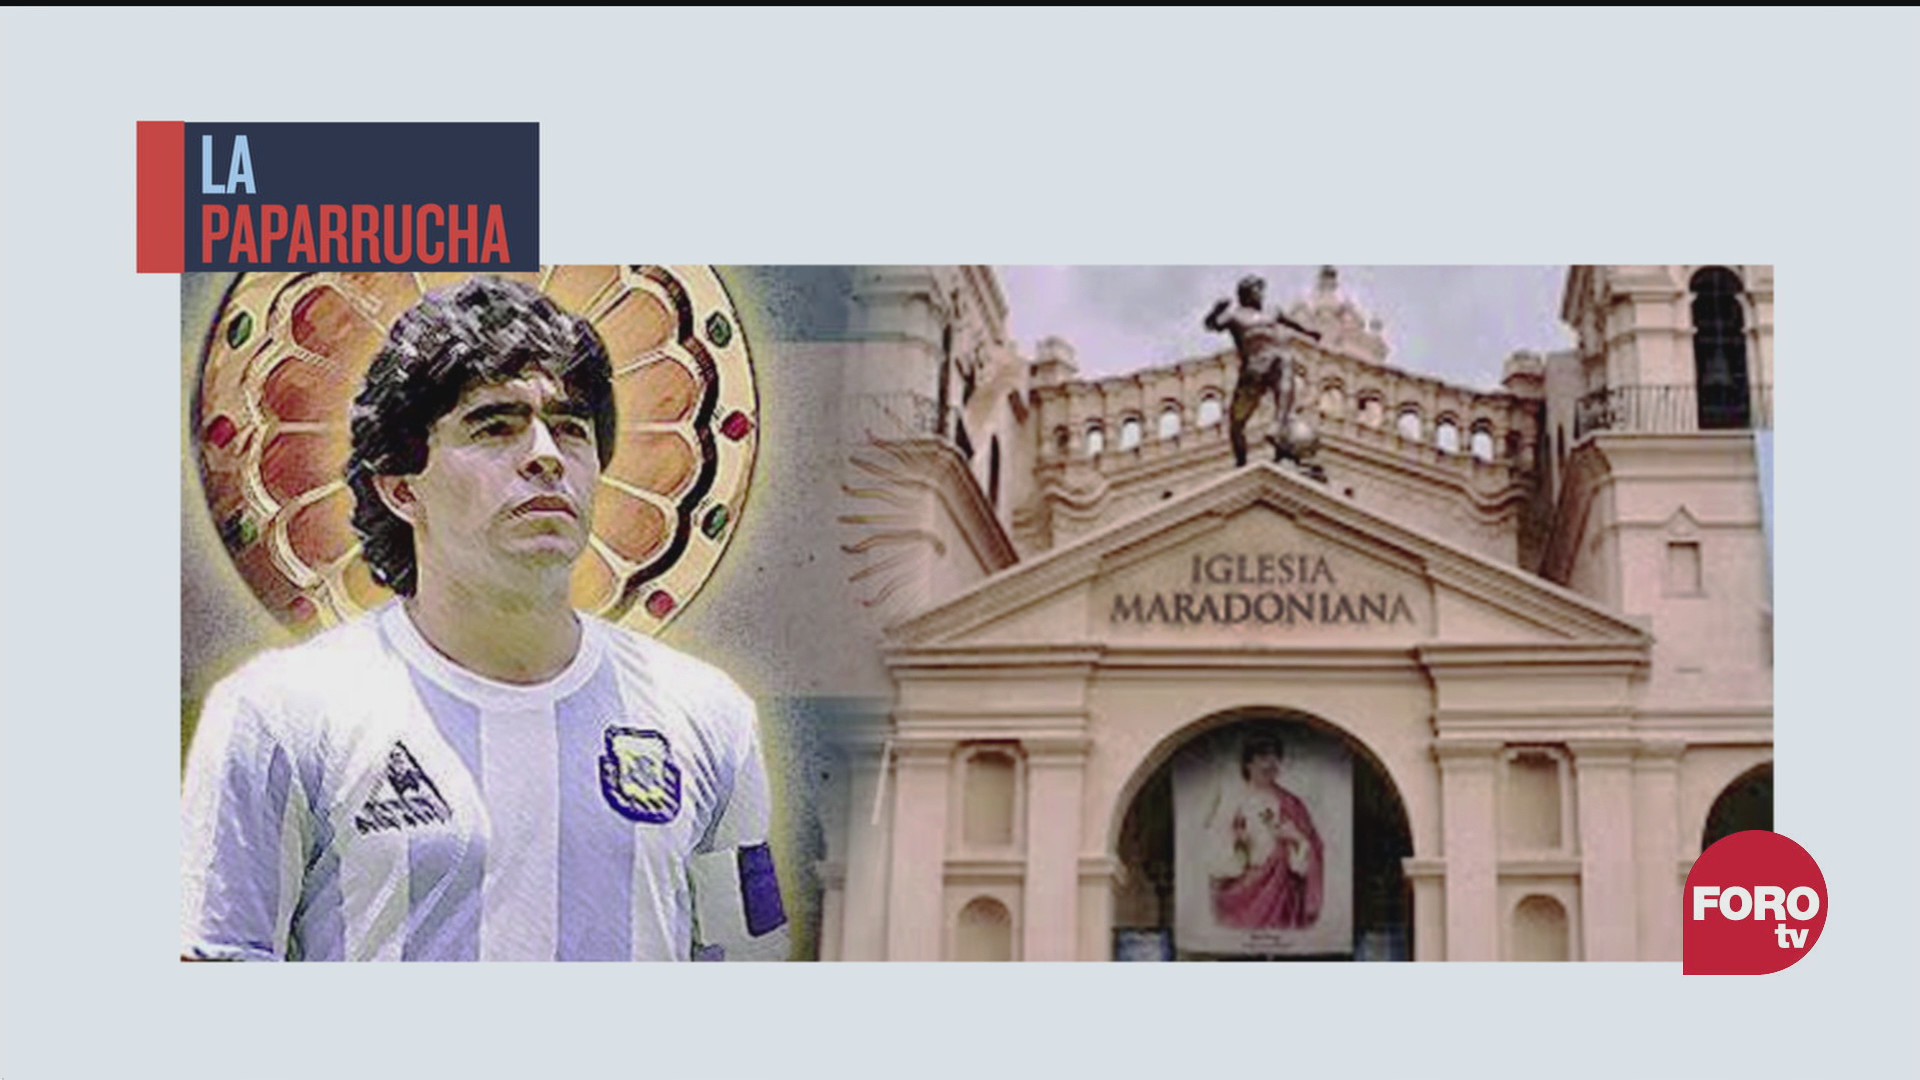 Iglesia de Maradona reúne a 40 mil fanáticos del mundo, la paparrucha del día